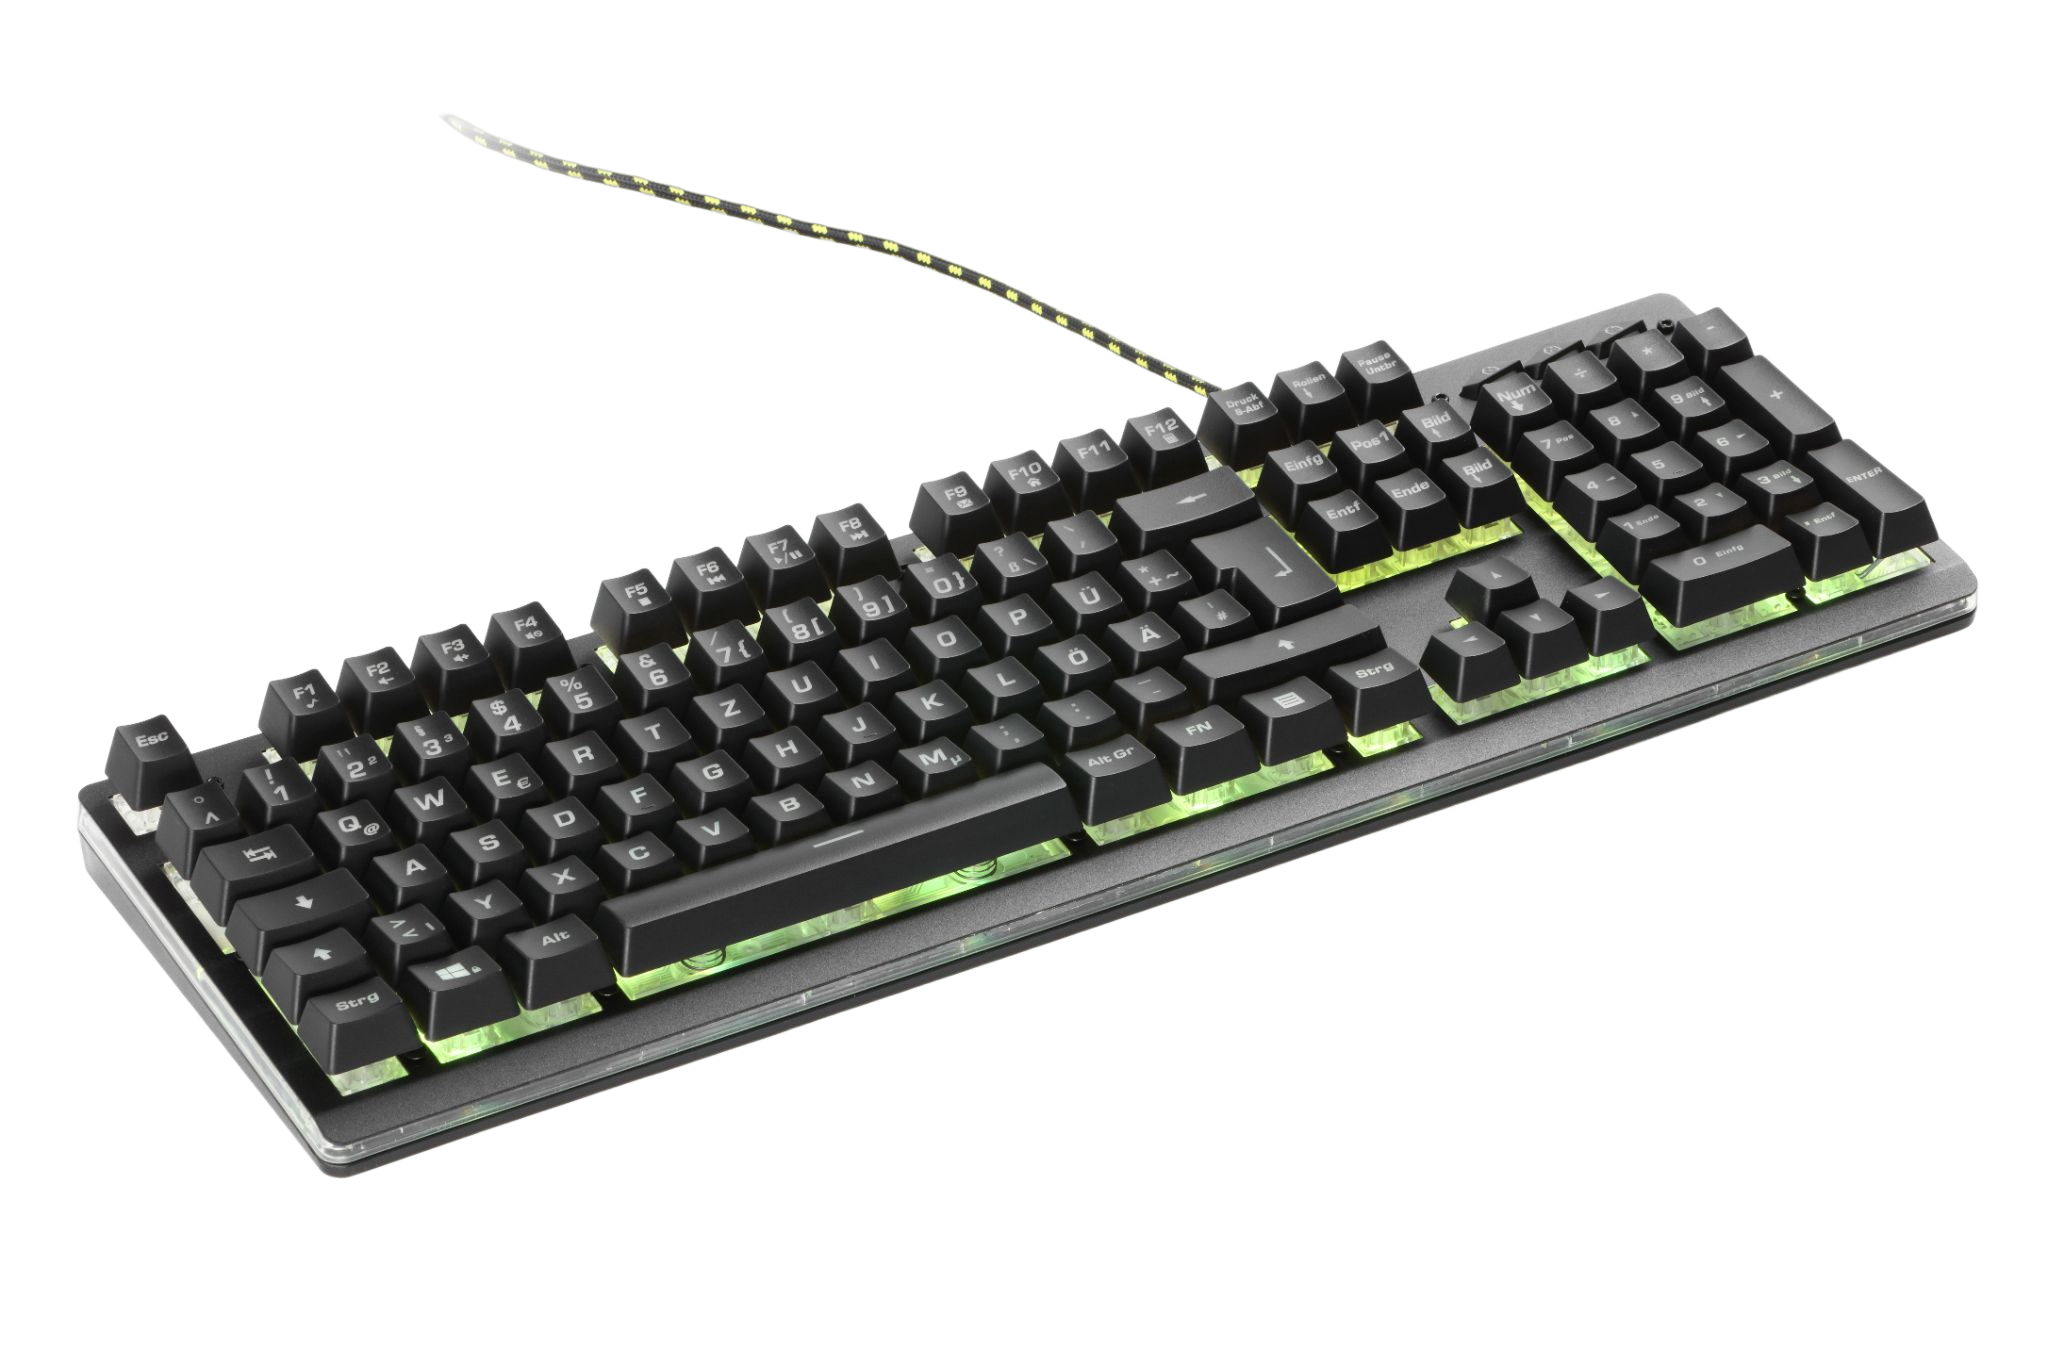 Pro™, SNAKEBYTE Gaming-Tastatur, Key:Board Mechanisch